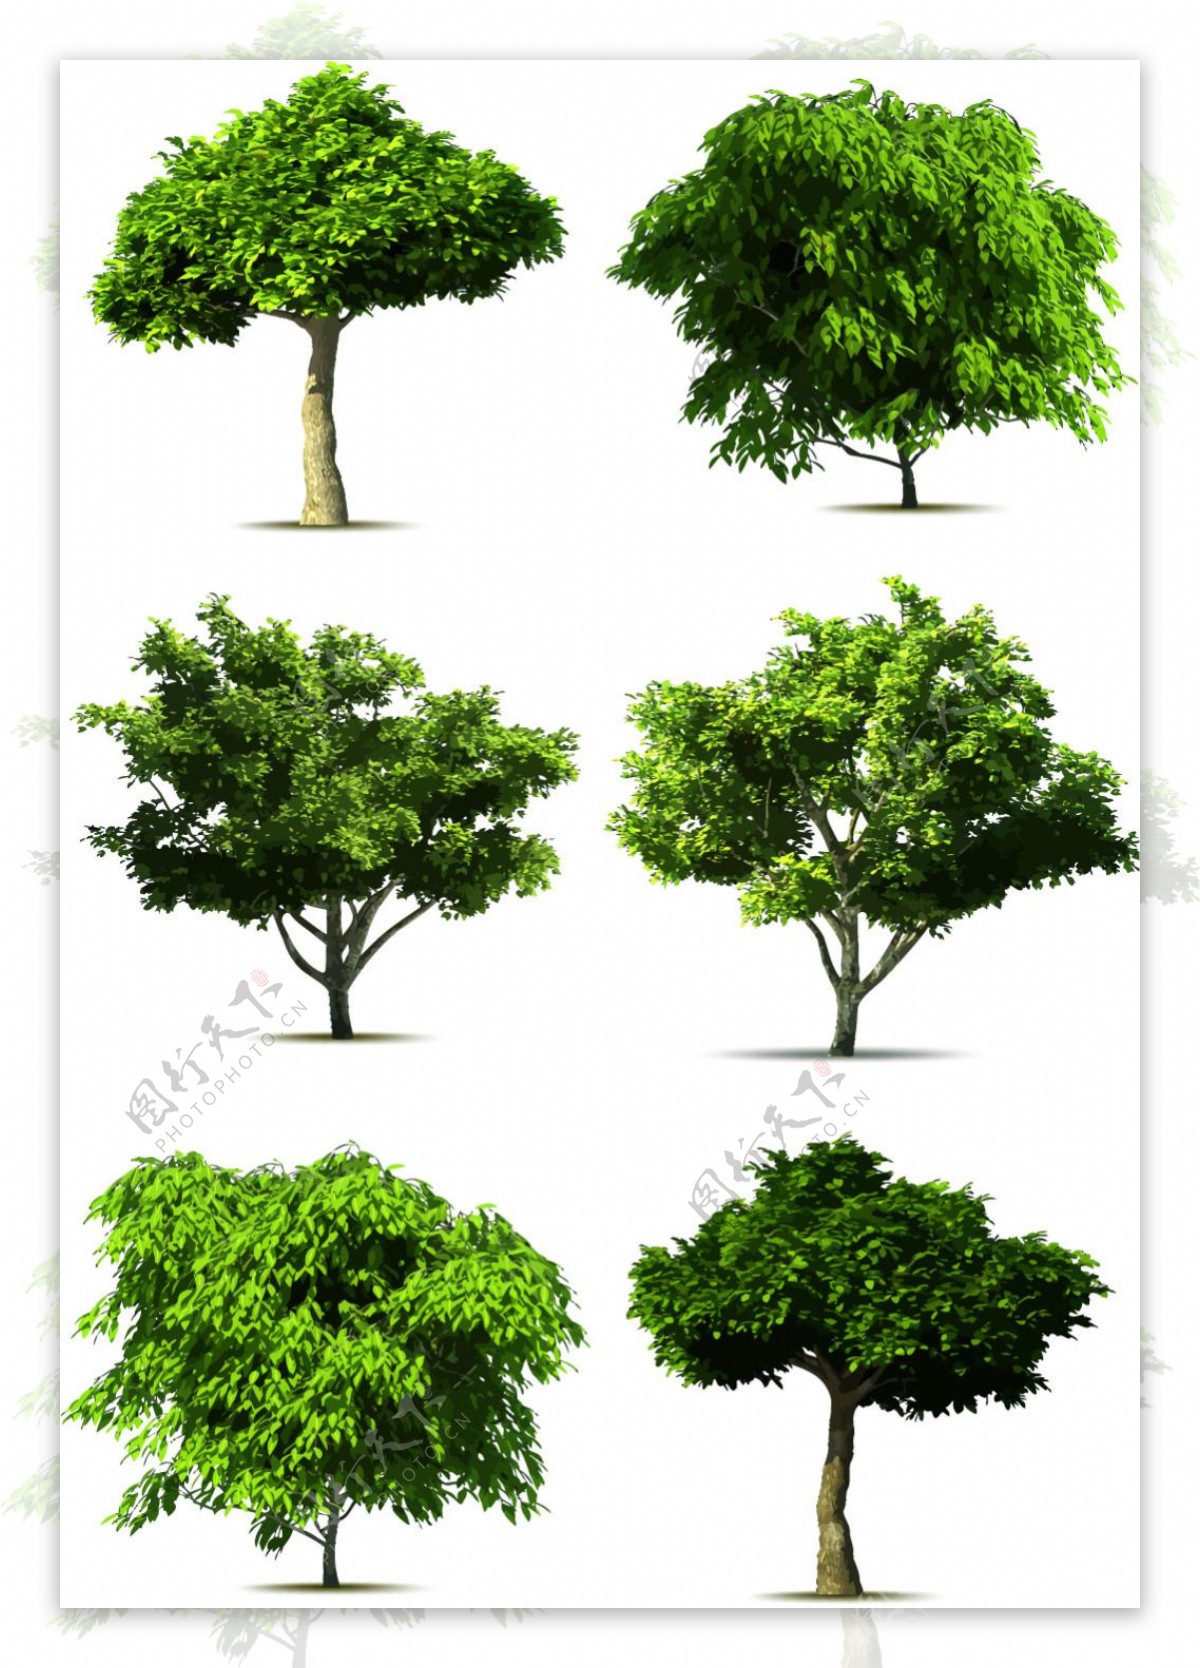 写实风格大树矢量图形设计素材